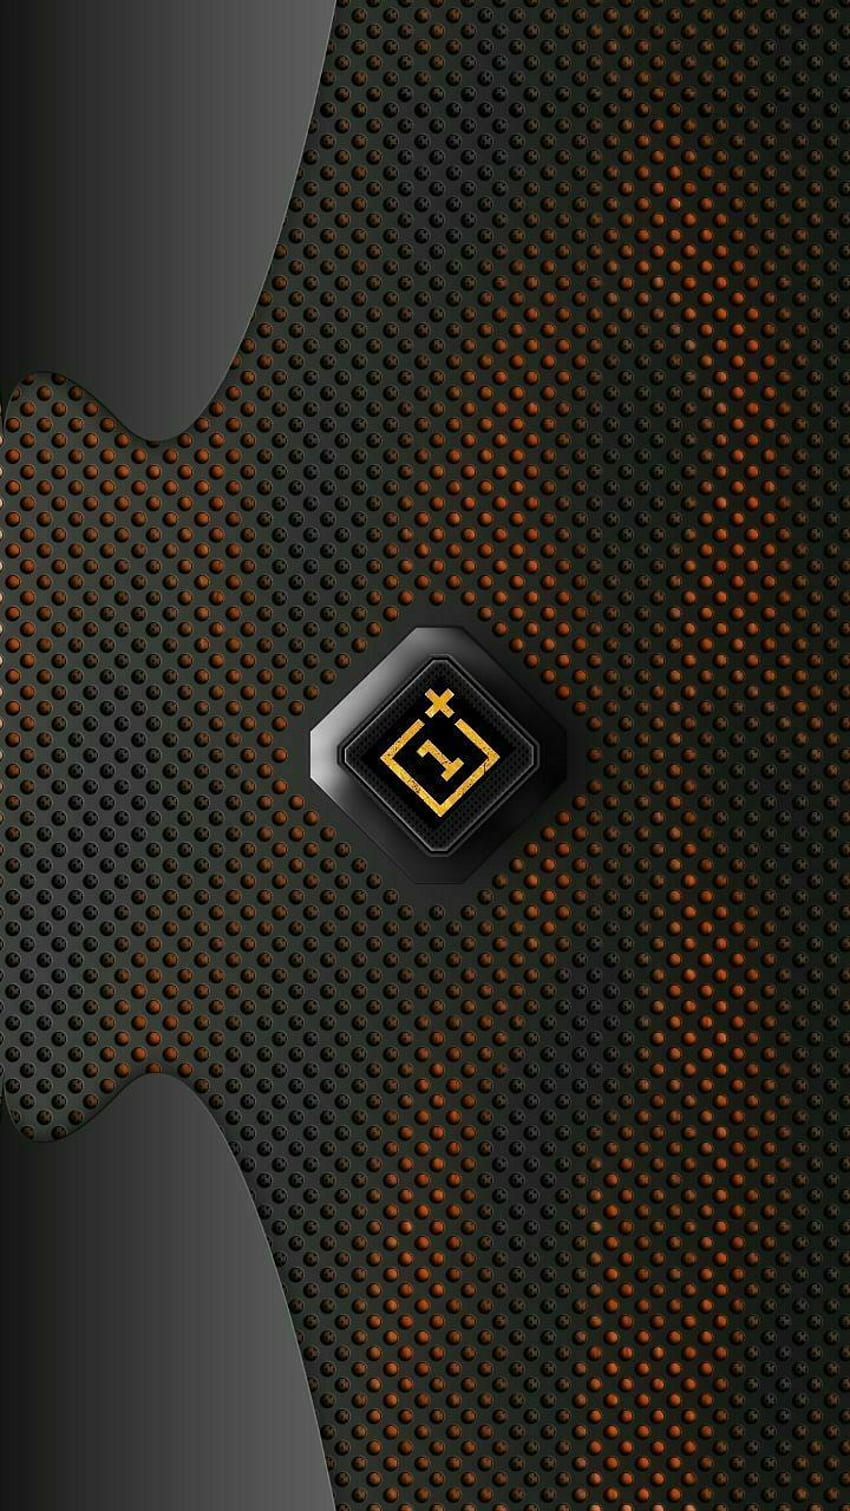 OnePlus Logo HD Wallpaper là cách tuyệt vời để cập nhật điện thoại của bạn với một hình nền đẹp và sang trọng. Với chất lượng cao và phong phú về chủ đề, bạn sẽ chắc chắn tìm thấy một hình nền phù hợp cho điện thoại của mình.